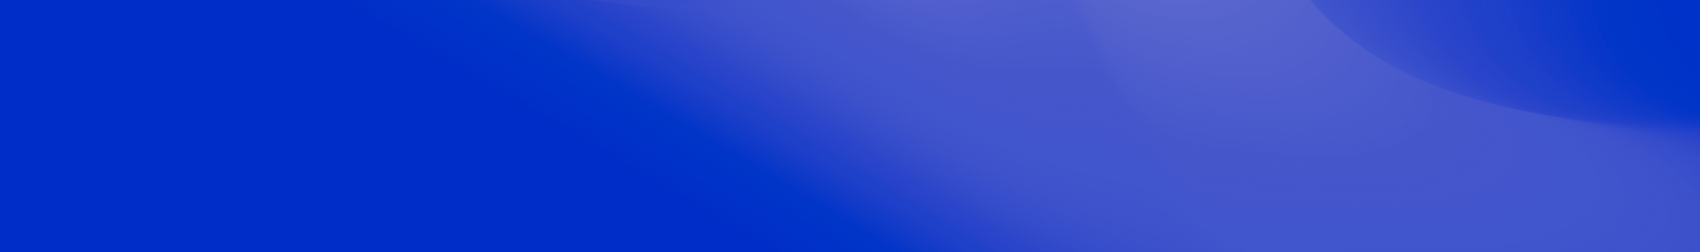 blue background image